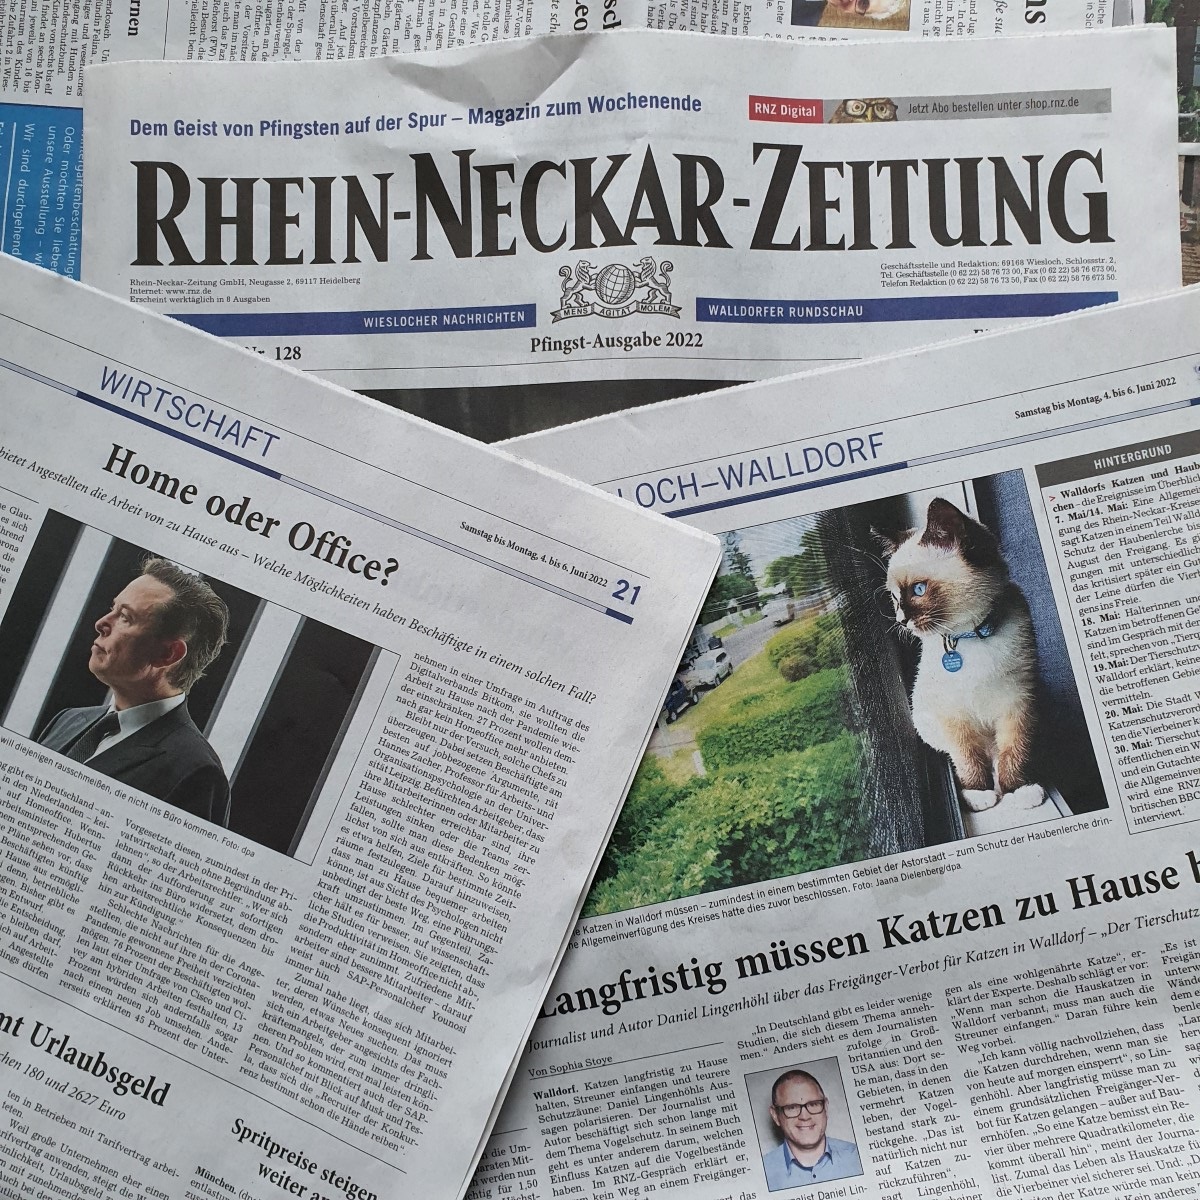 Rhein-Neckar-Zeitung im Juni 2022 | Foto: Dr. Clemens Kriesel